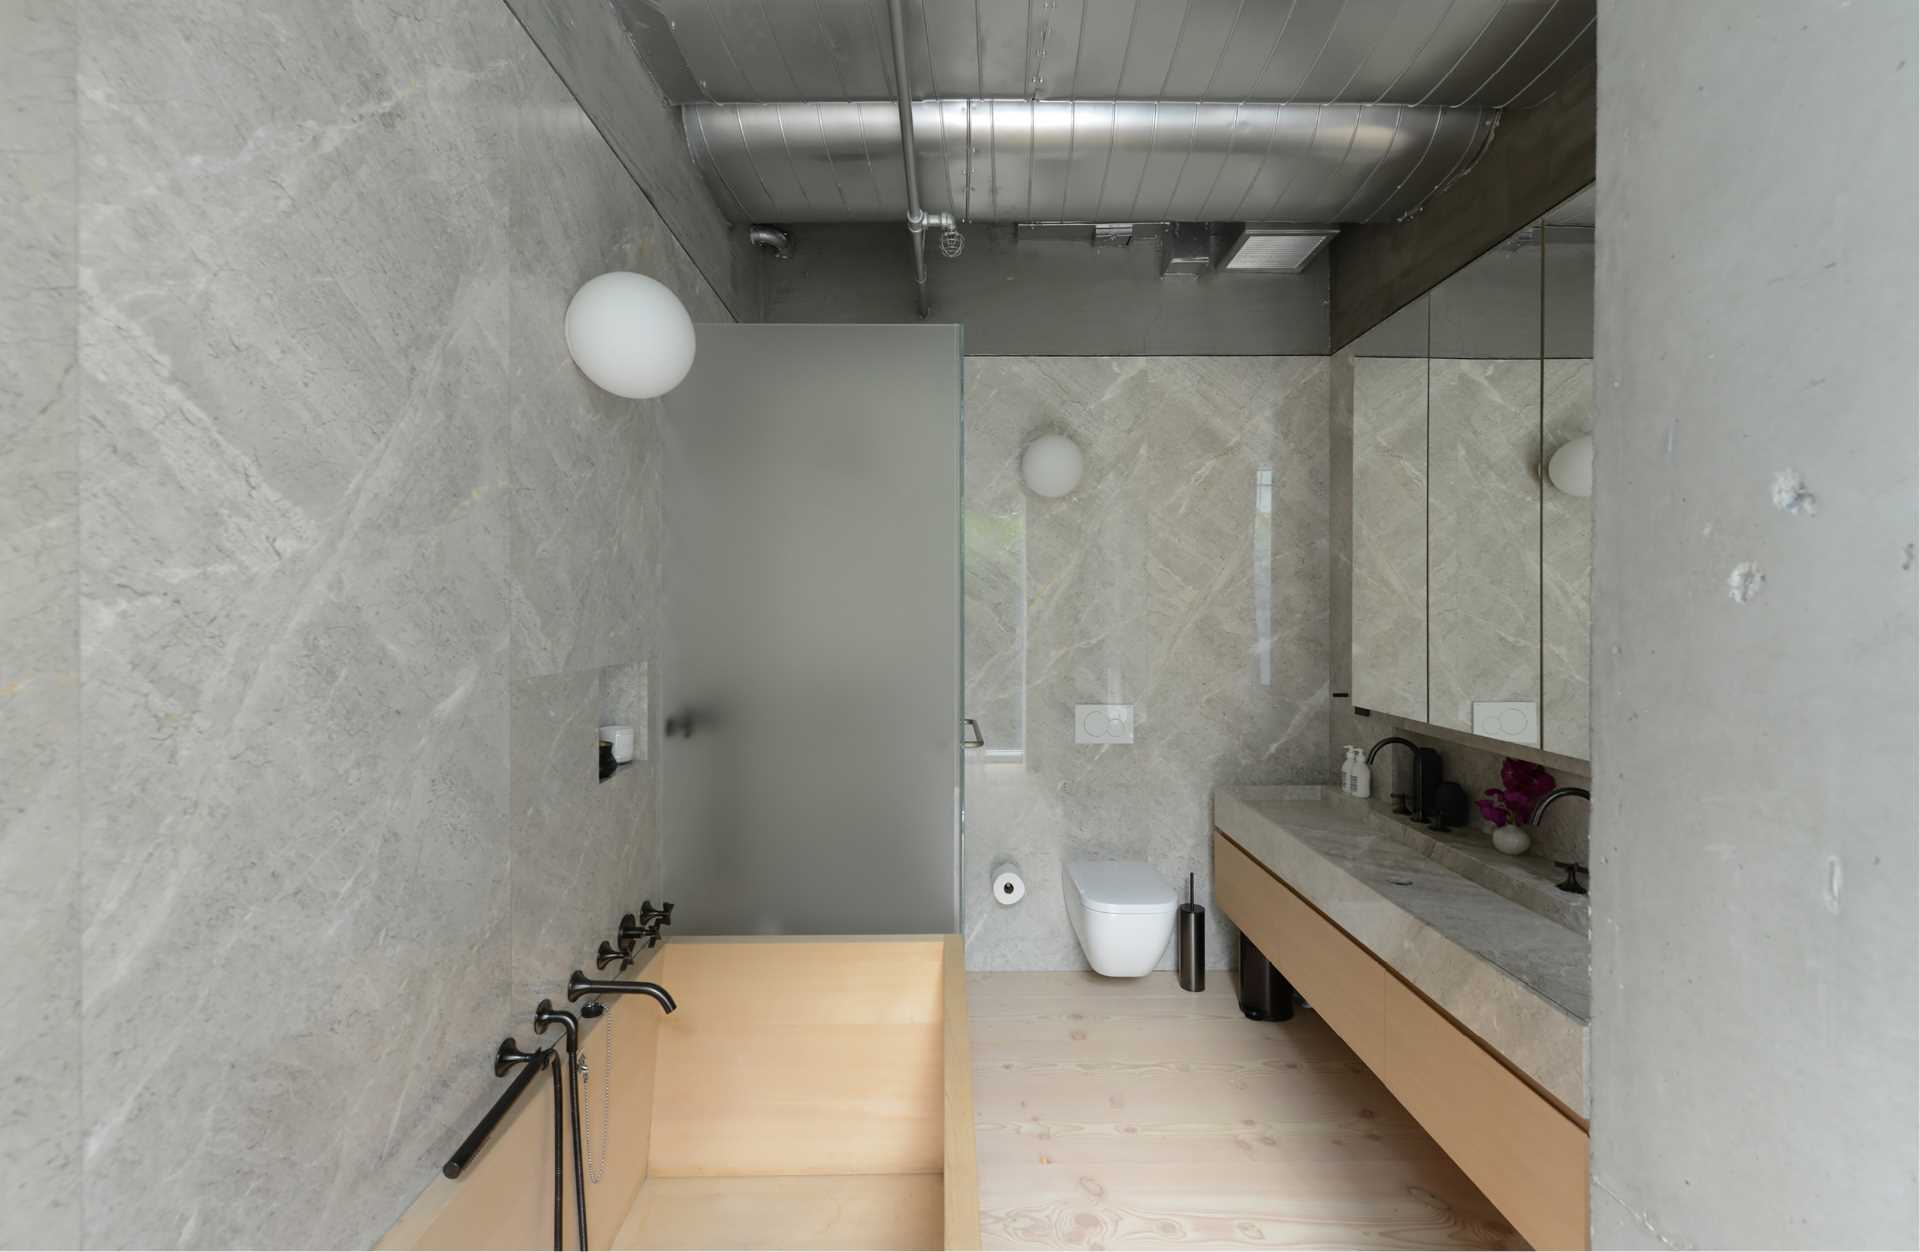 A modern bathroom with grey stone walls and a wood bathtub.